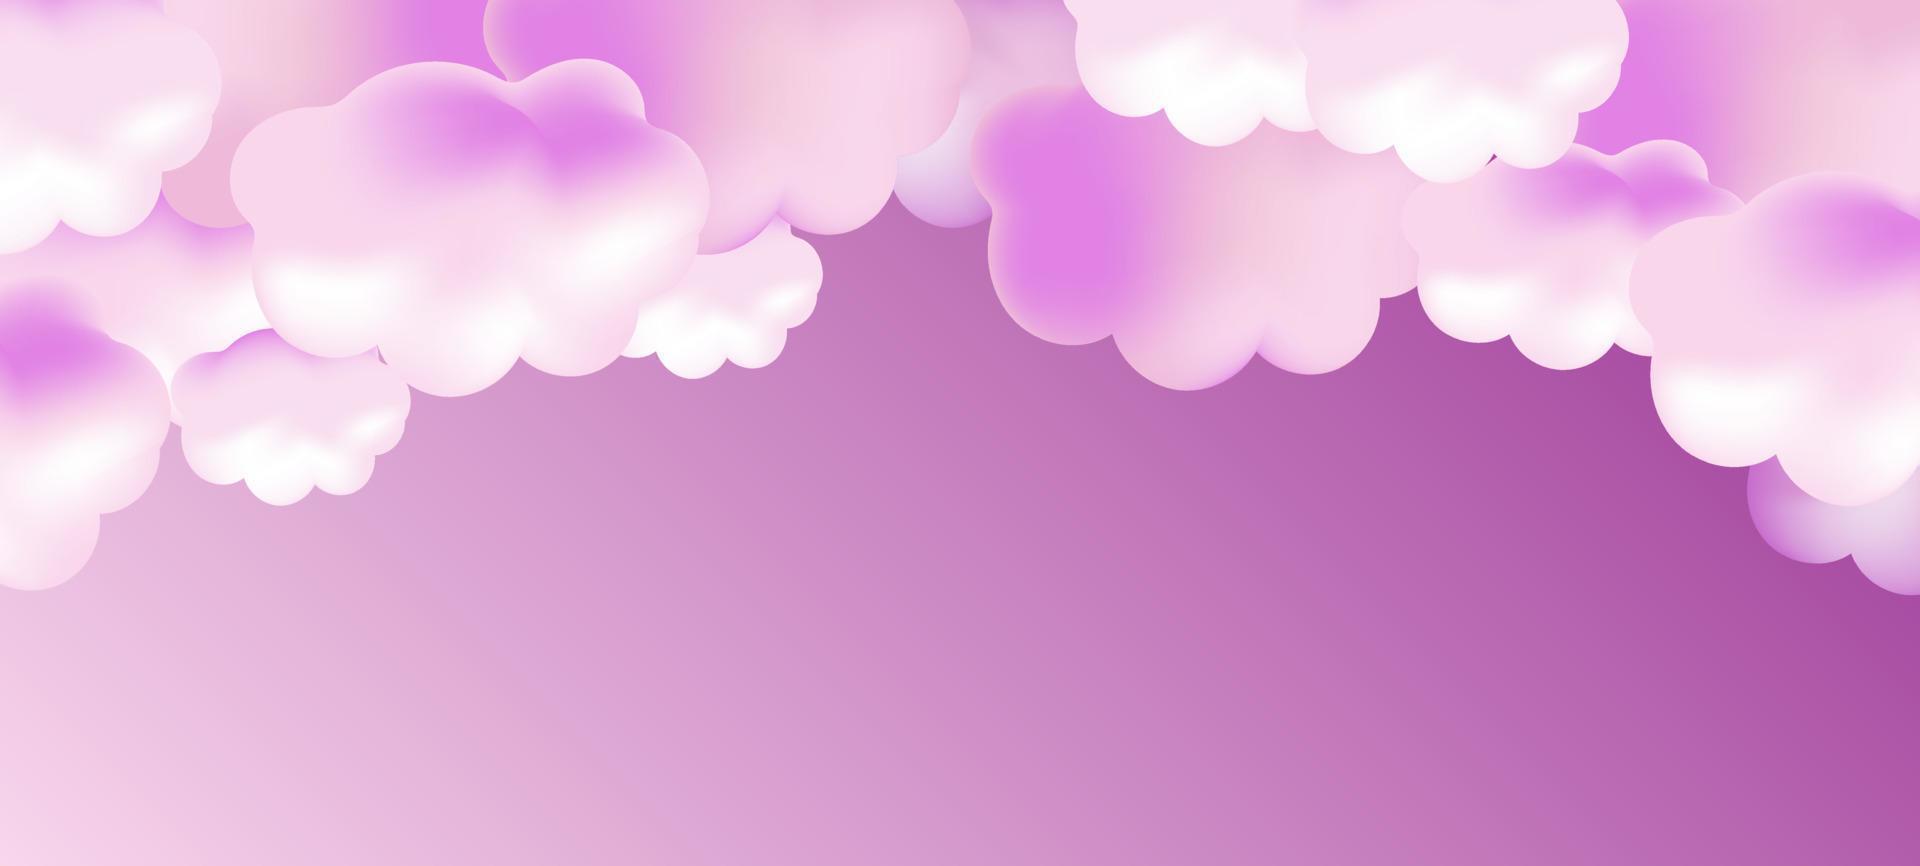 insieme realistico 3d di nuvole. illustrazione vettoriale eps10